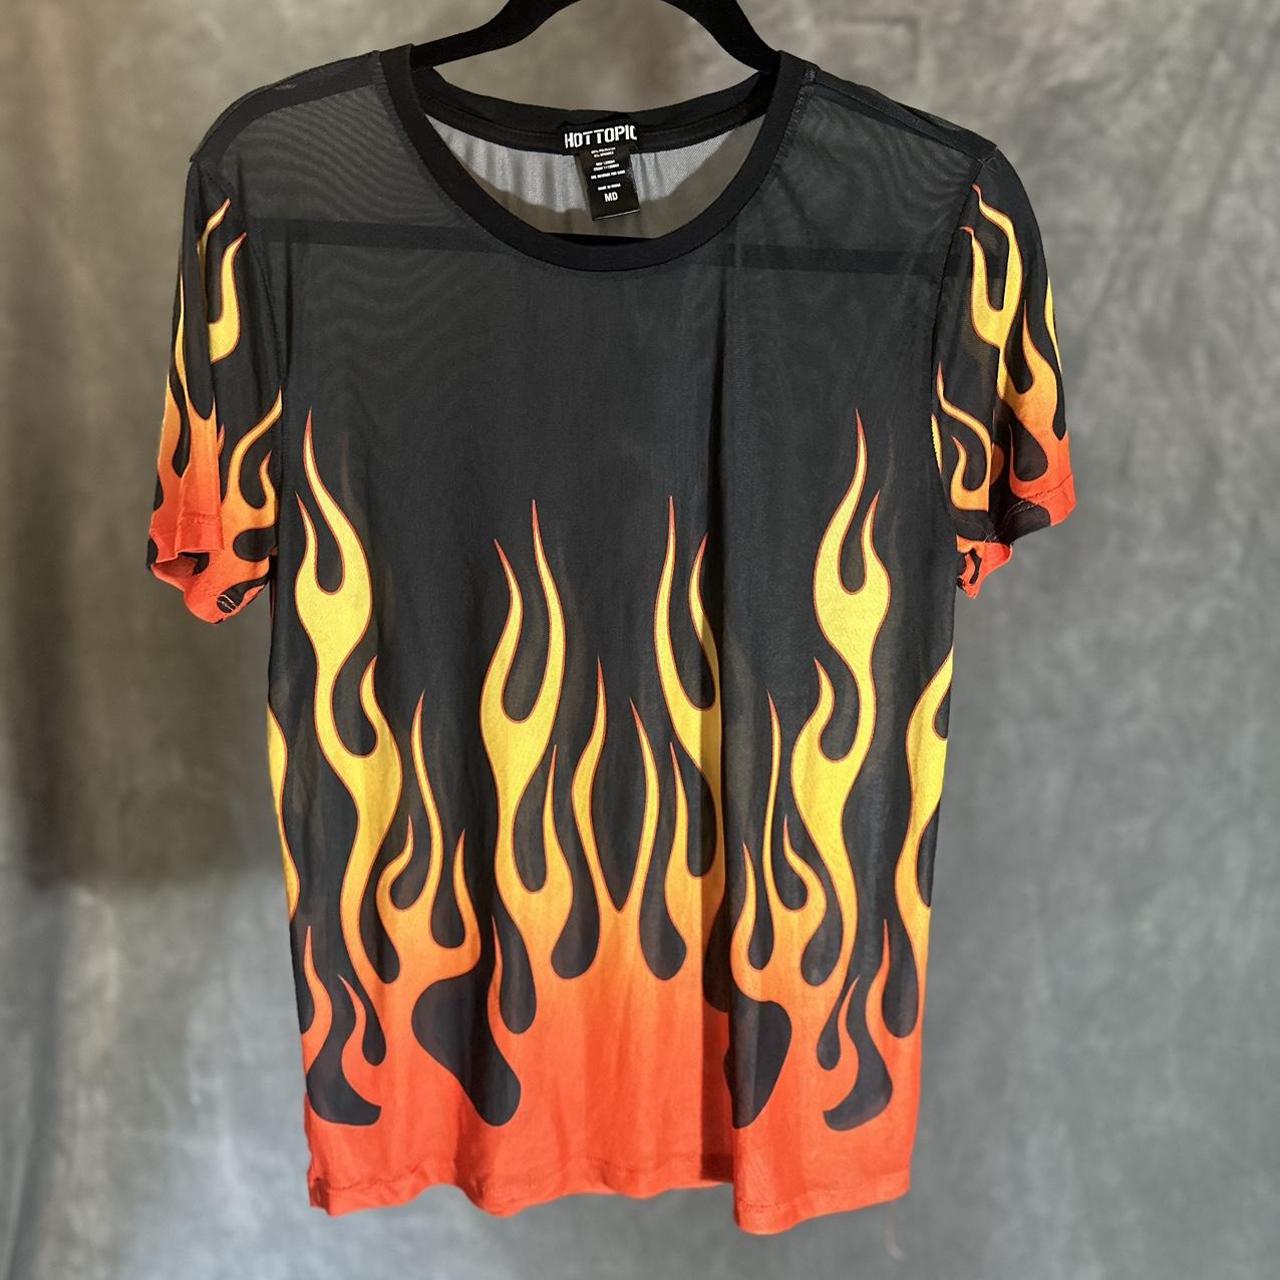 Guy Fieri Shirt Flames